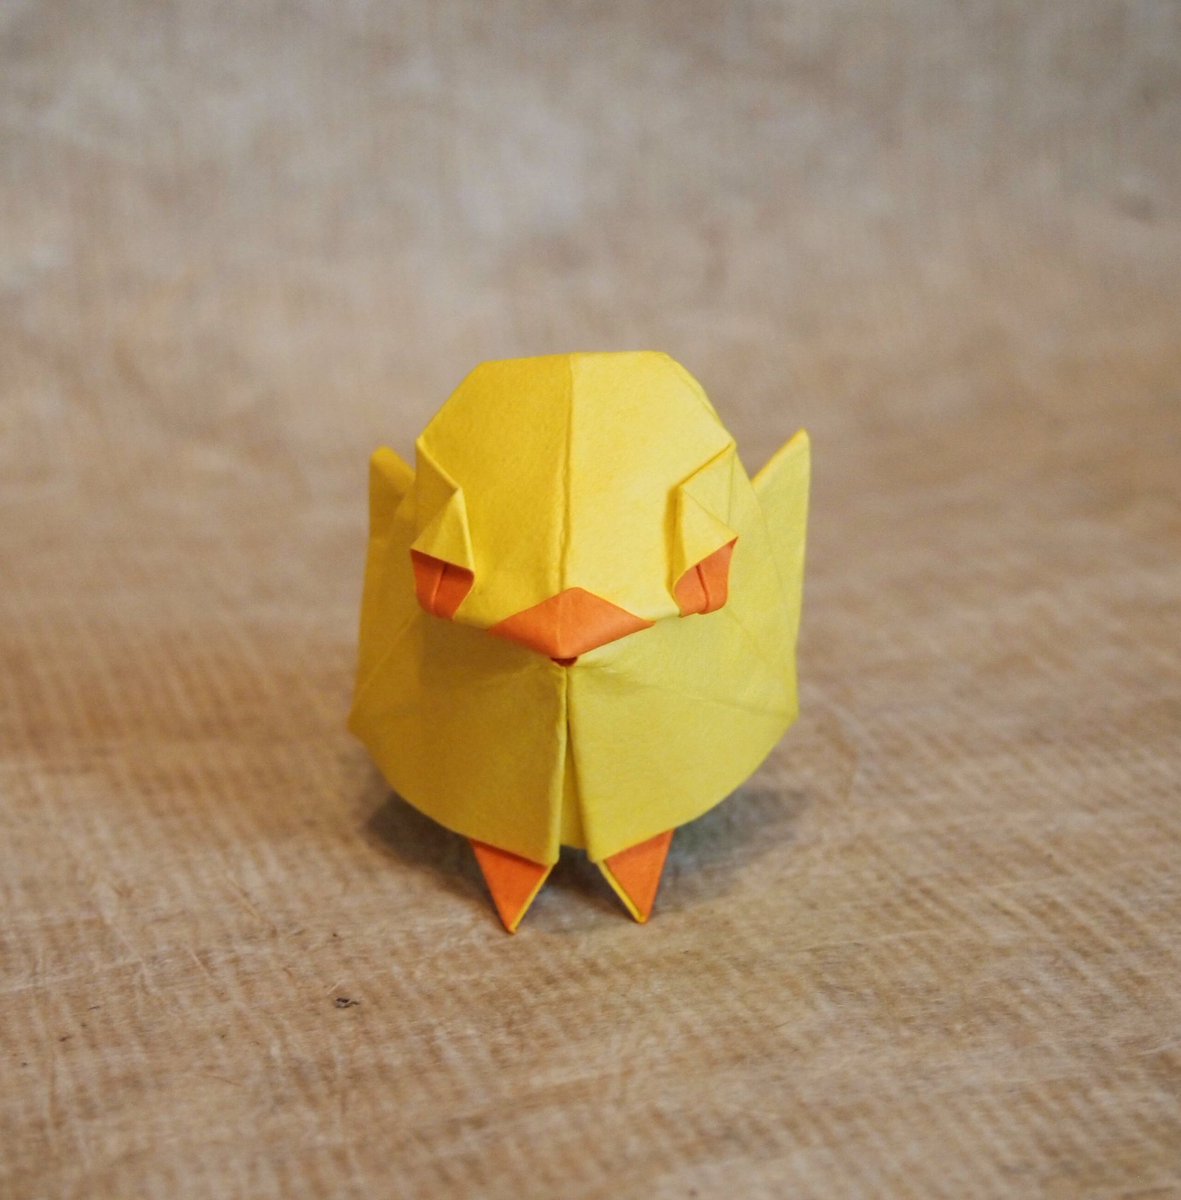 一匹柴犬 على تويتر 折り紙作品 ひよこ 創作 折り 一匹柴犬 数年前に折ったヒヨコ が無理矢理仕上げであまり納得できてなかったので再トライ シンプルにかわいいデザインにできました 魚の基本的より Origami Chick 折り紙作品 折り紙 ひよこ T